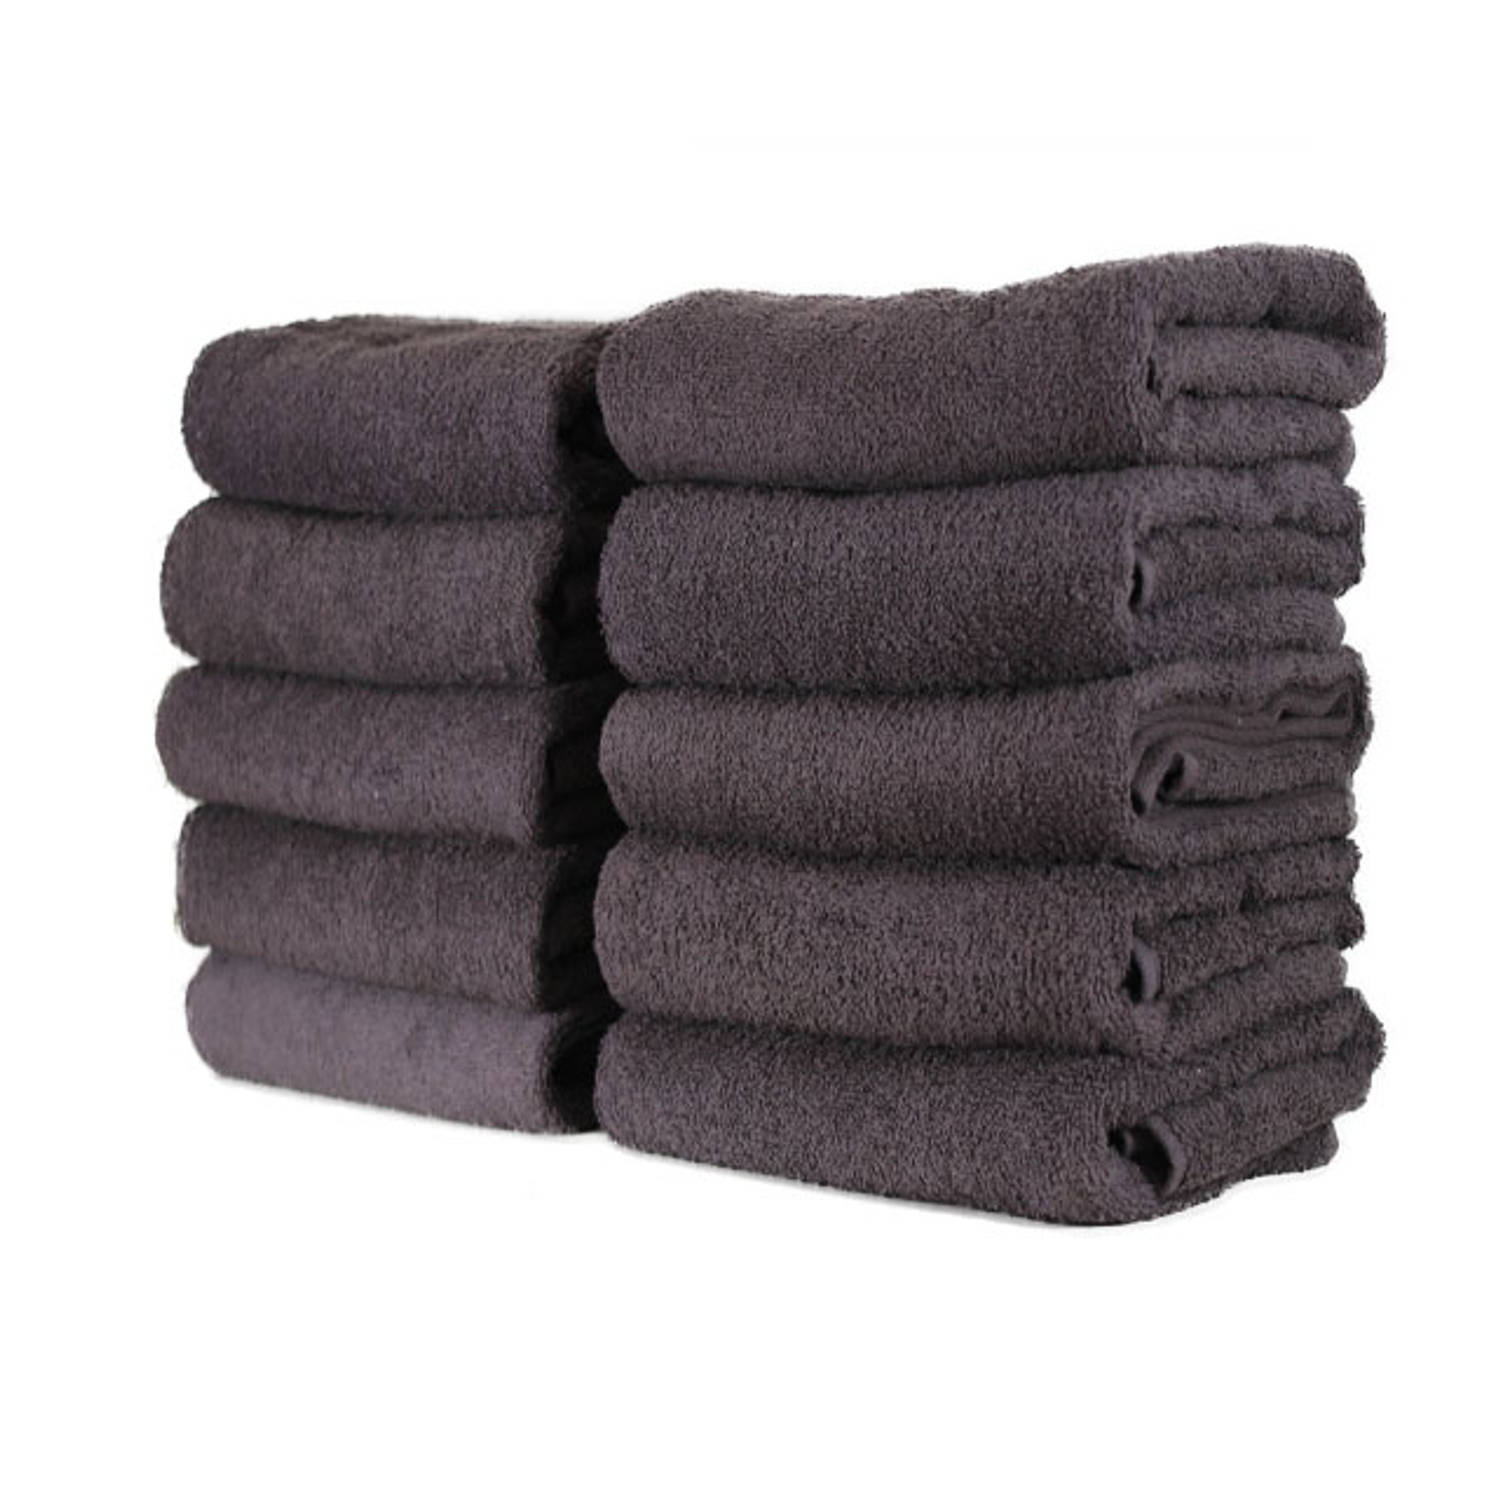 Hotel handdoek - set van 6 stuks 70x140 cm - Antraciet | Blokker